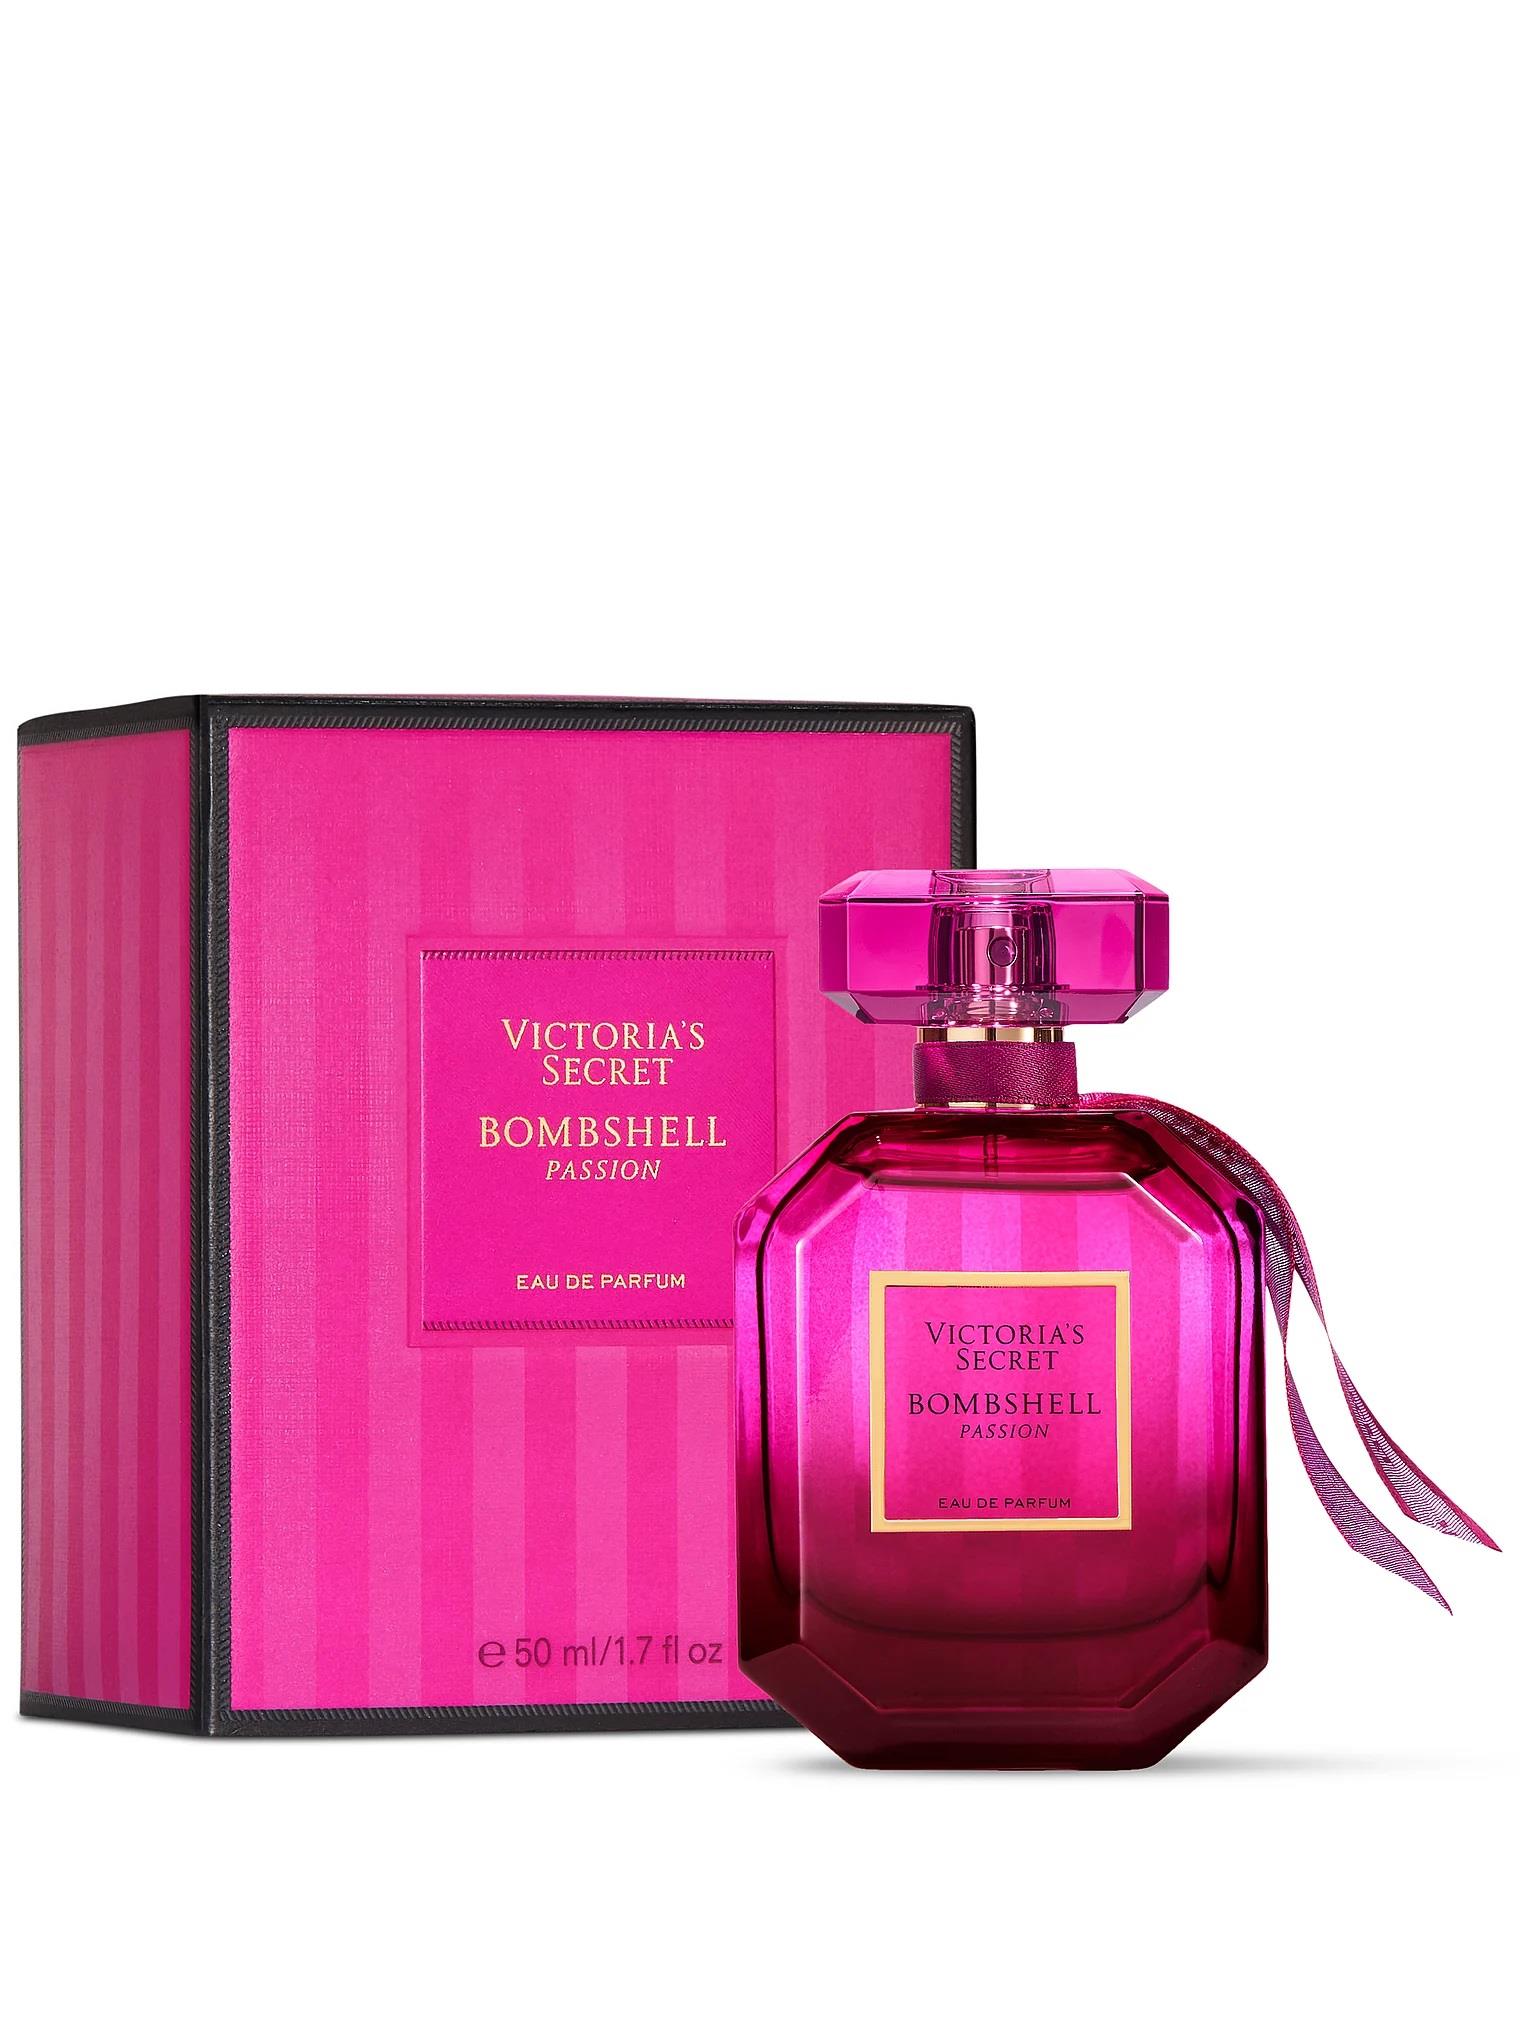 Bombshell Passion Eau de Parfum | Victoria's Secret